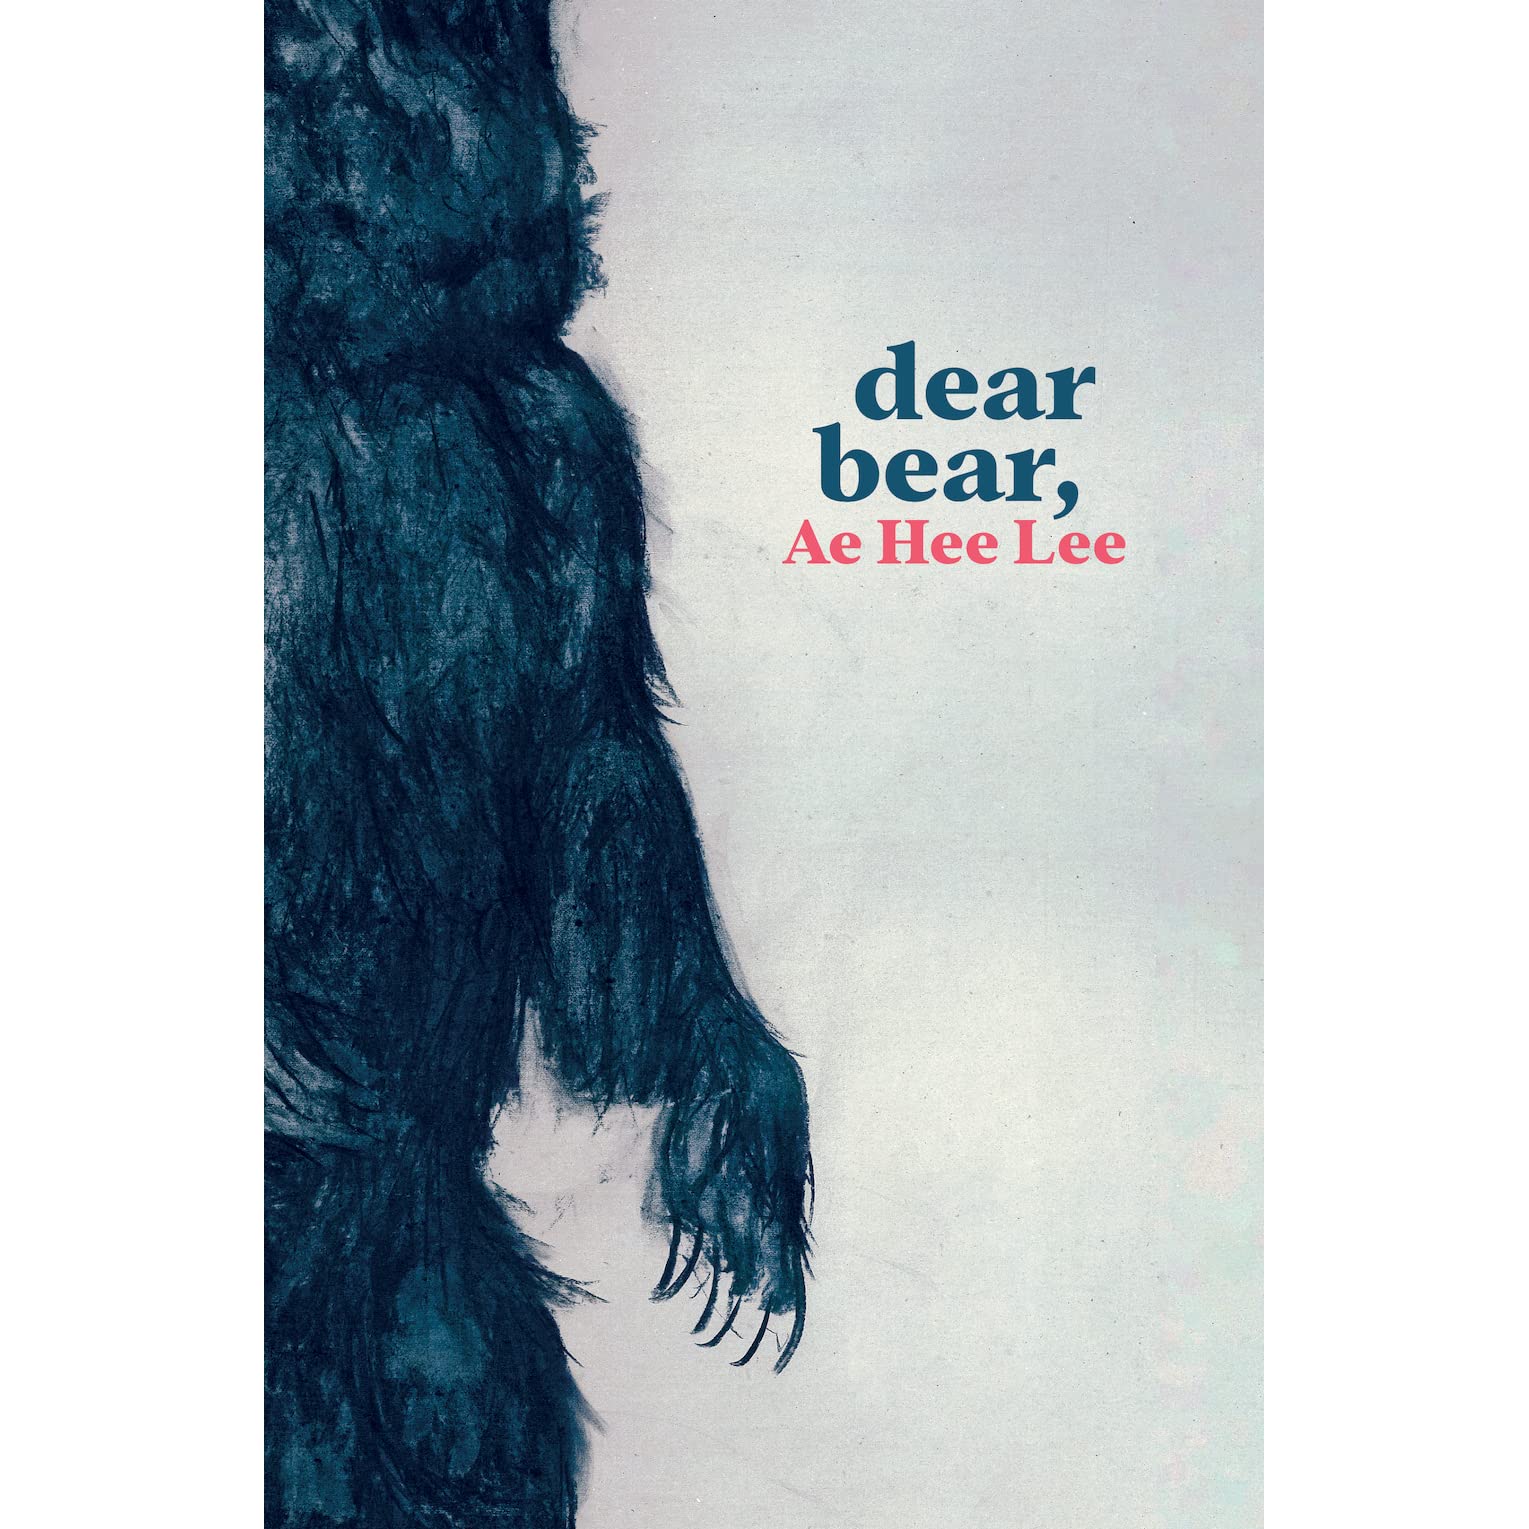 dear bear,